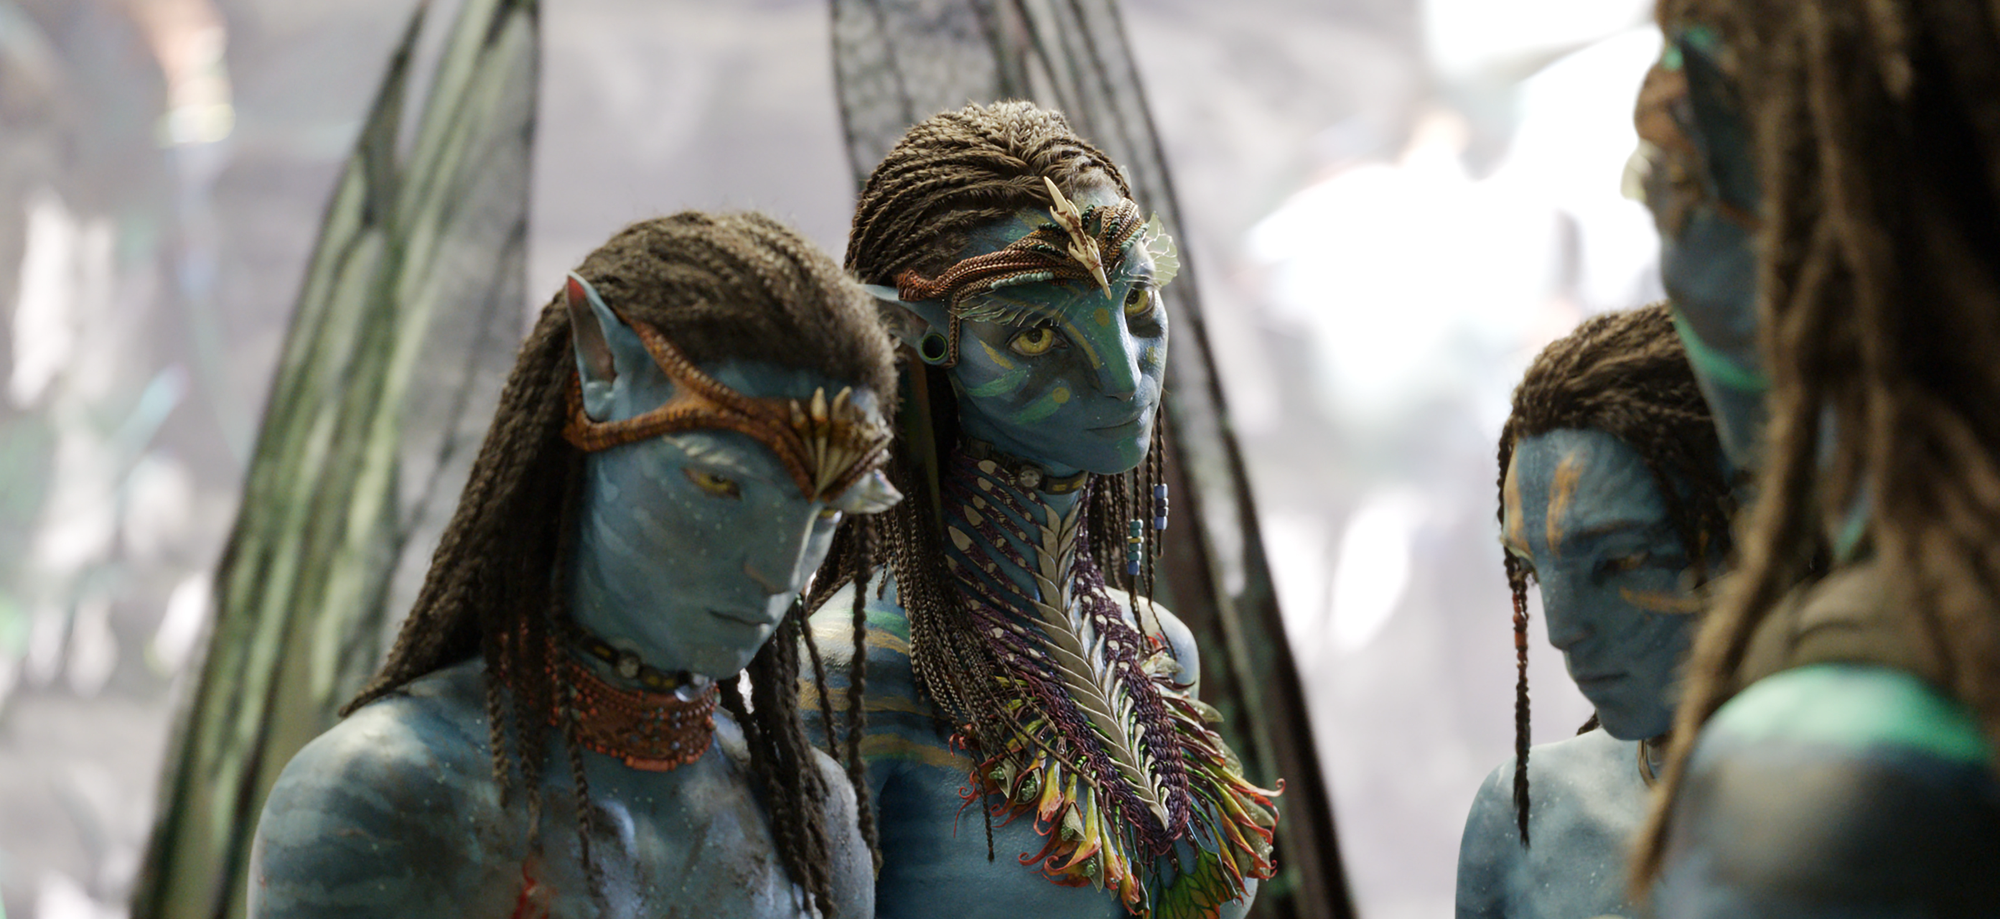 Giải mã bí ẩn trong Avatar 2: Chân tướng nhân vật ai cũng nhắc đến nhưng cả phim không hề xuất hiện - Ảnh 4.